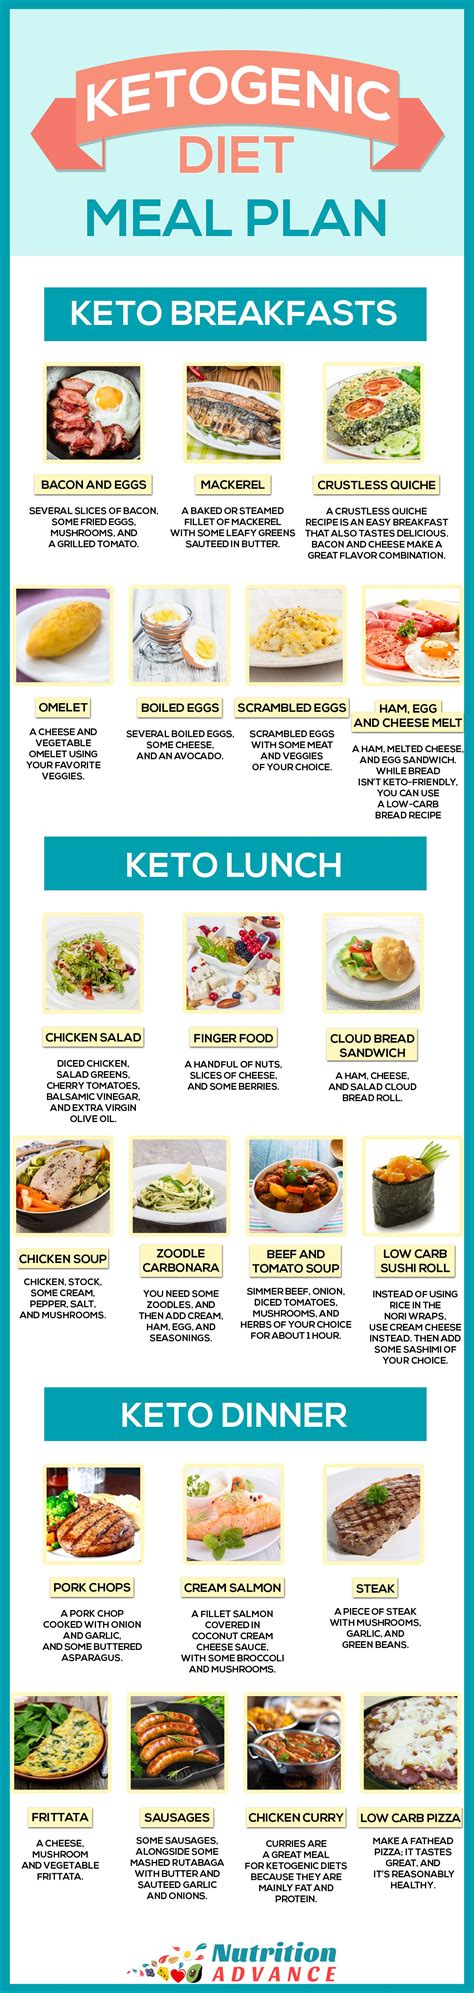 7 Day Meal Plan Keto Printable Keto Food List